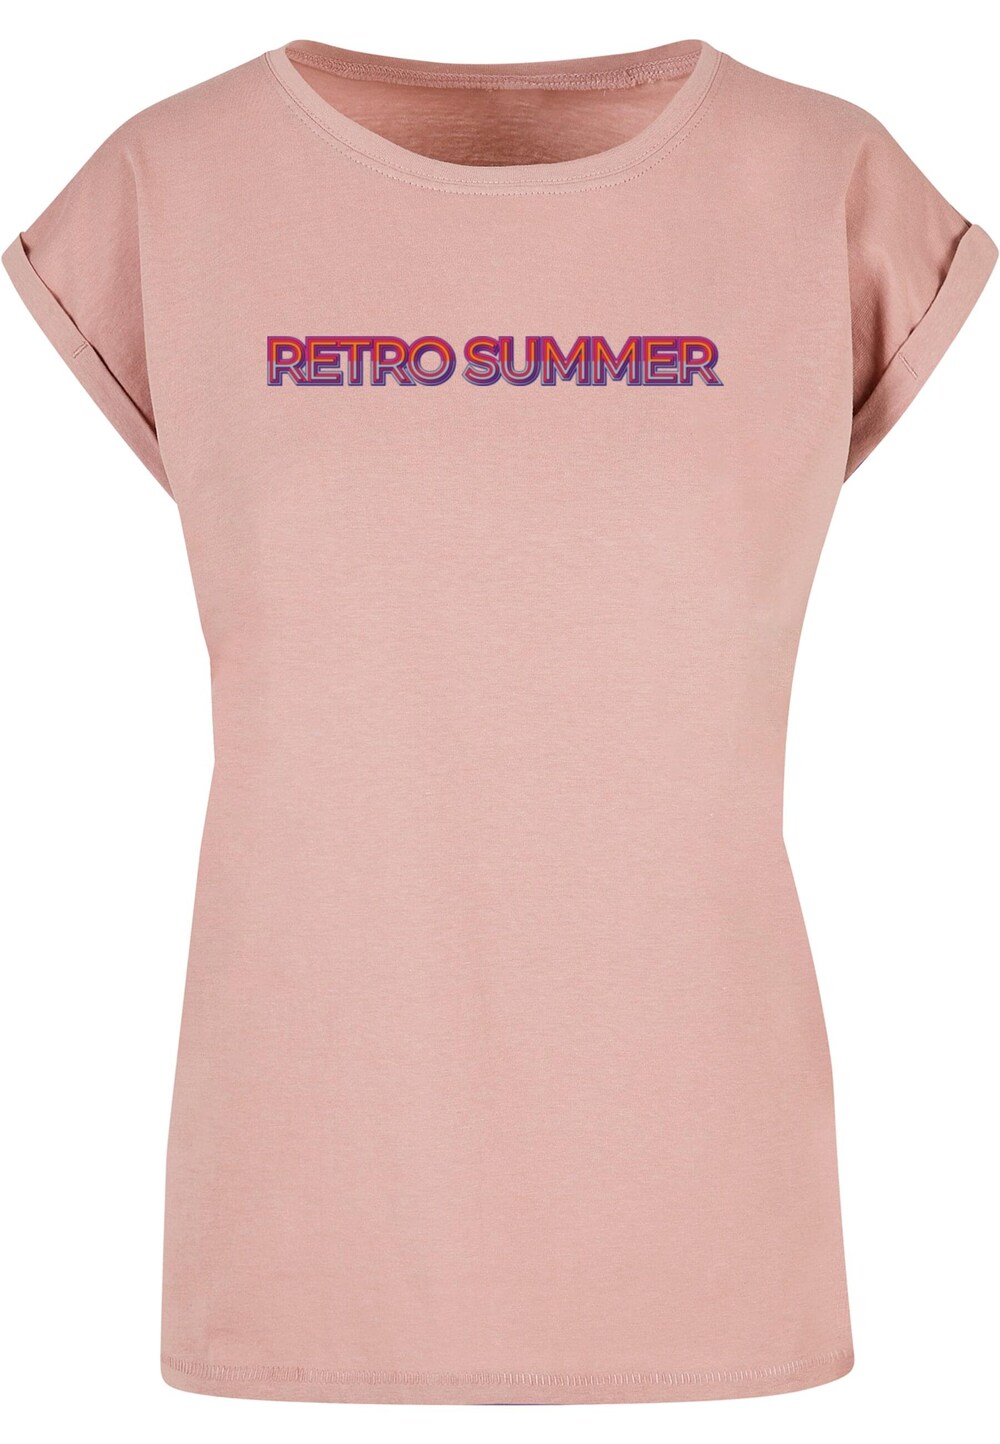 Рубашка Merchcode Summer - Retro, темно-розовый